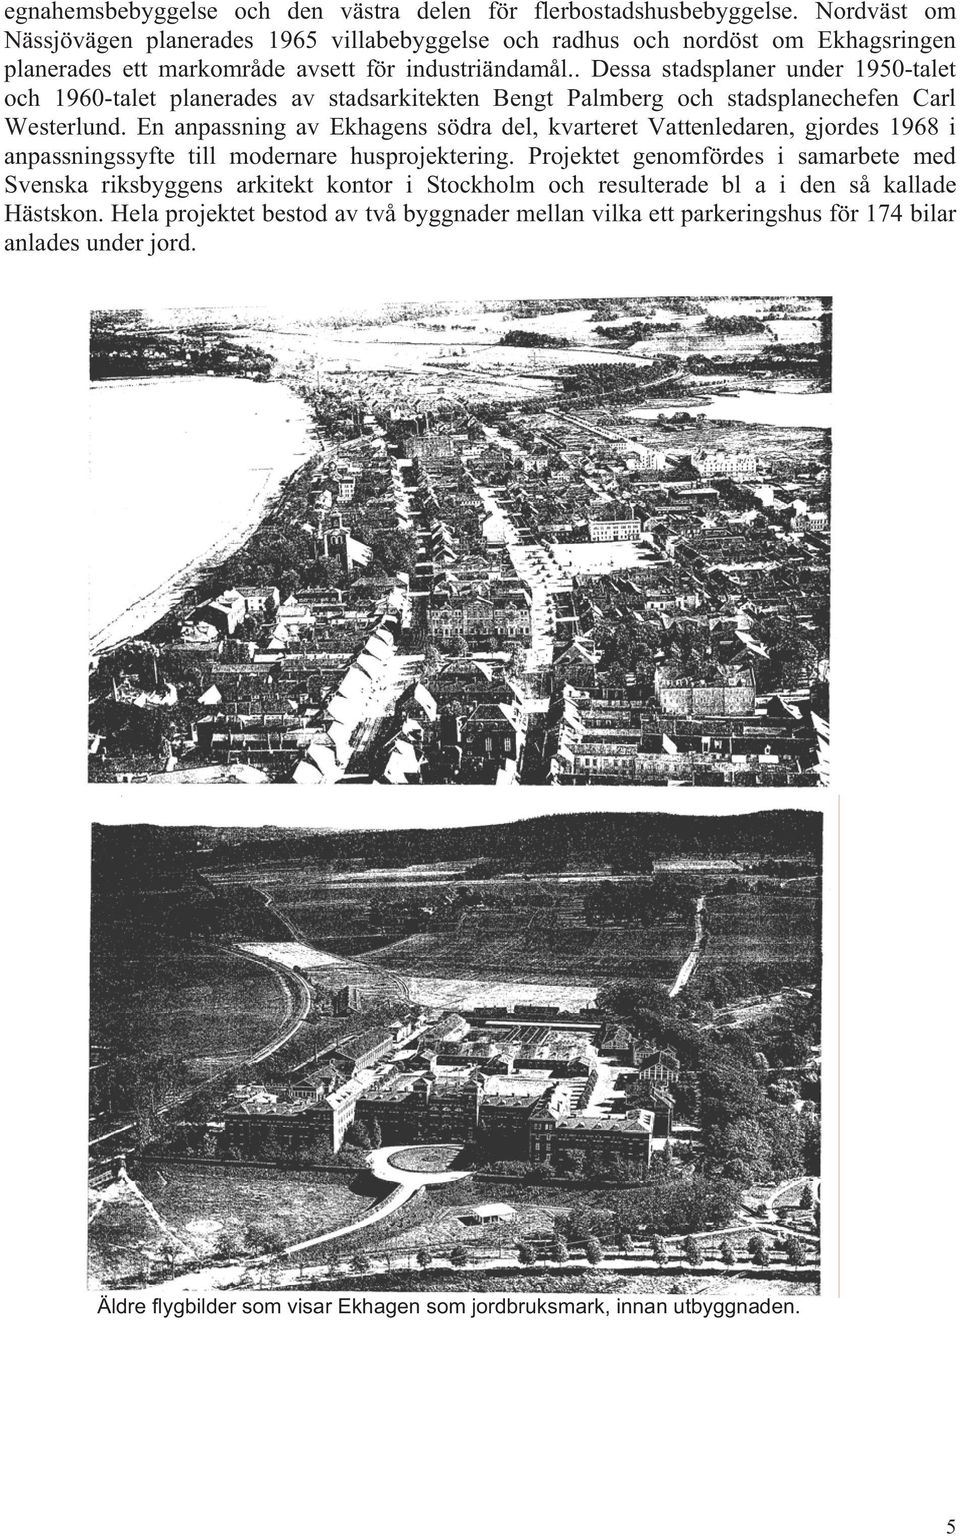 . Dessa stadsplaner under 1950-talet och 1960-talet planerades av stadsarkitekten Bengt Palmberg och stadsplanechefen Carl Westerlund.